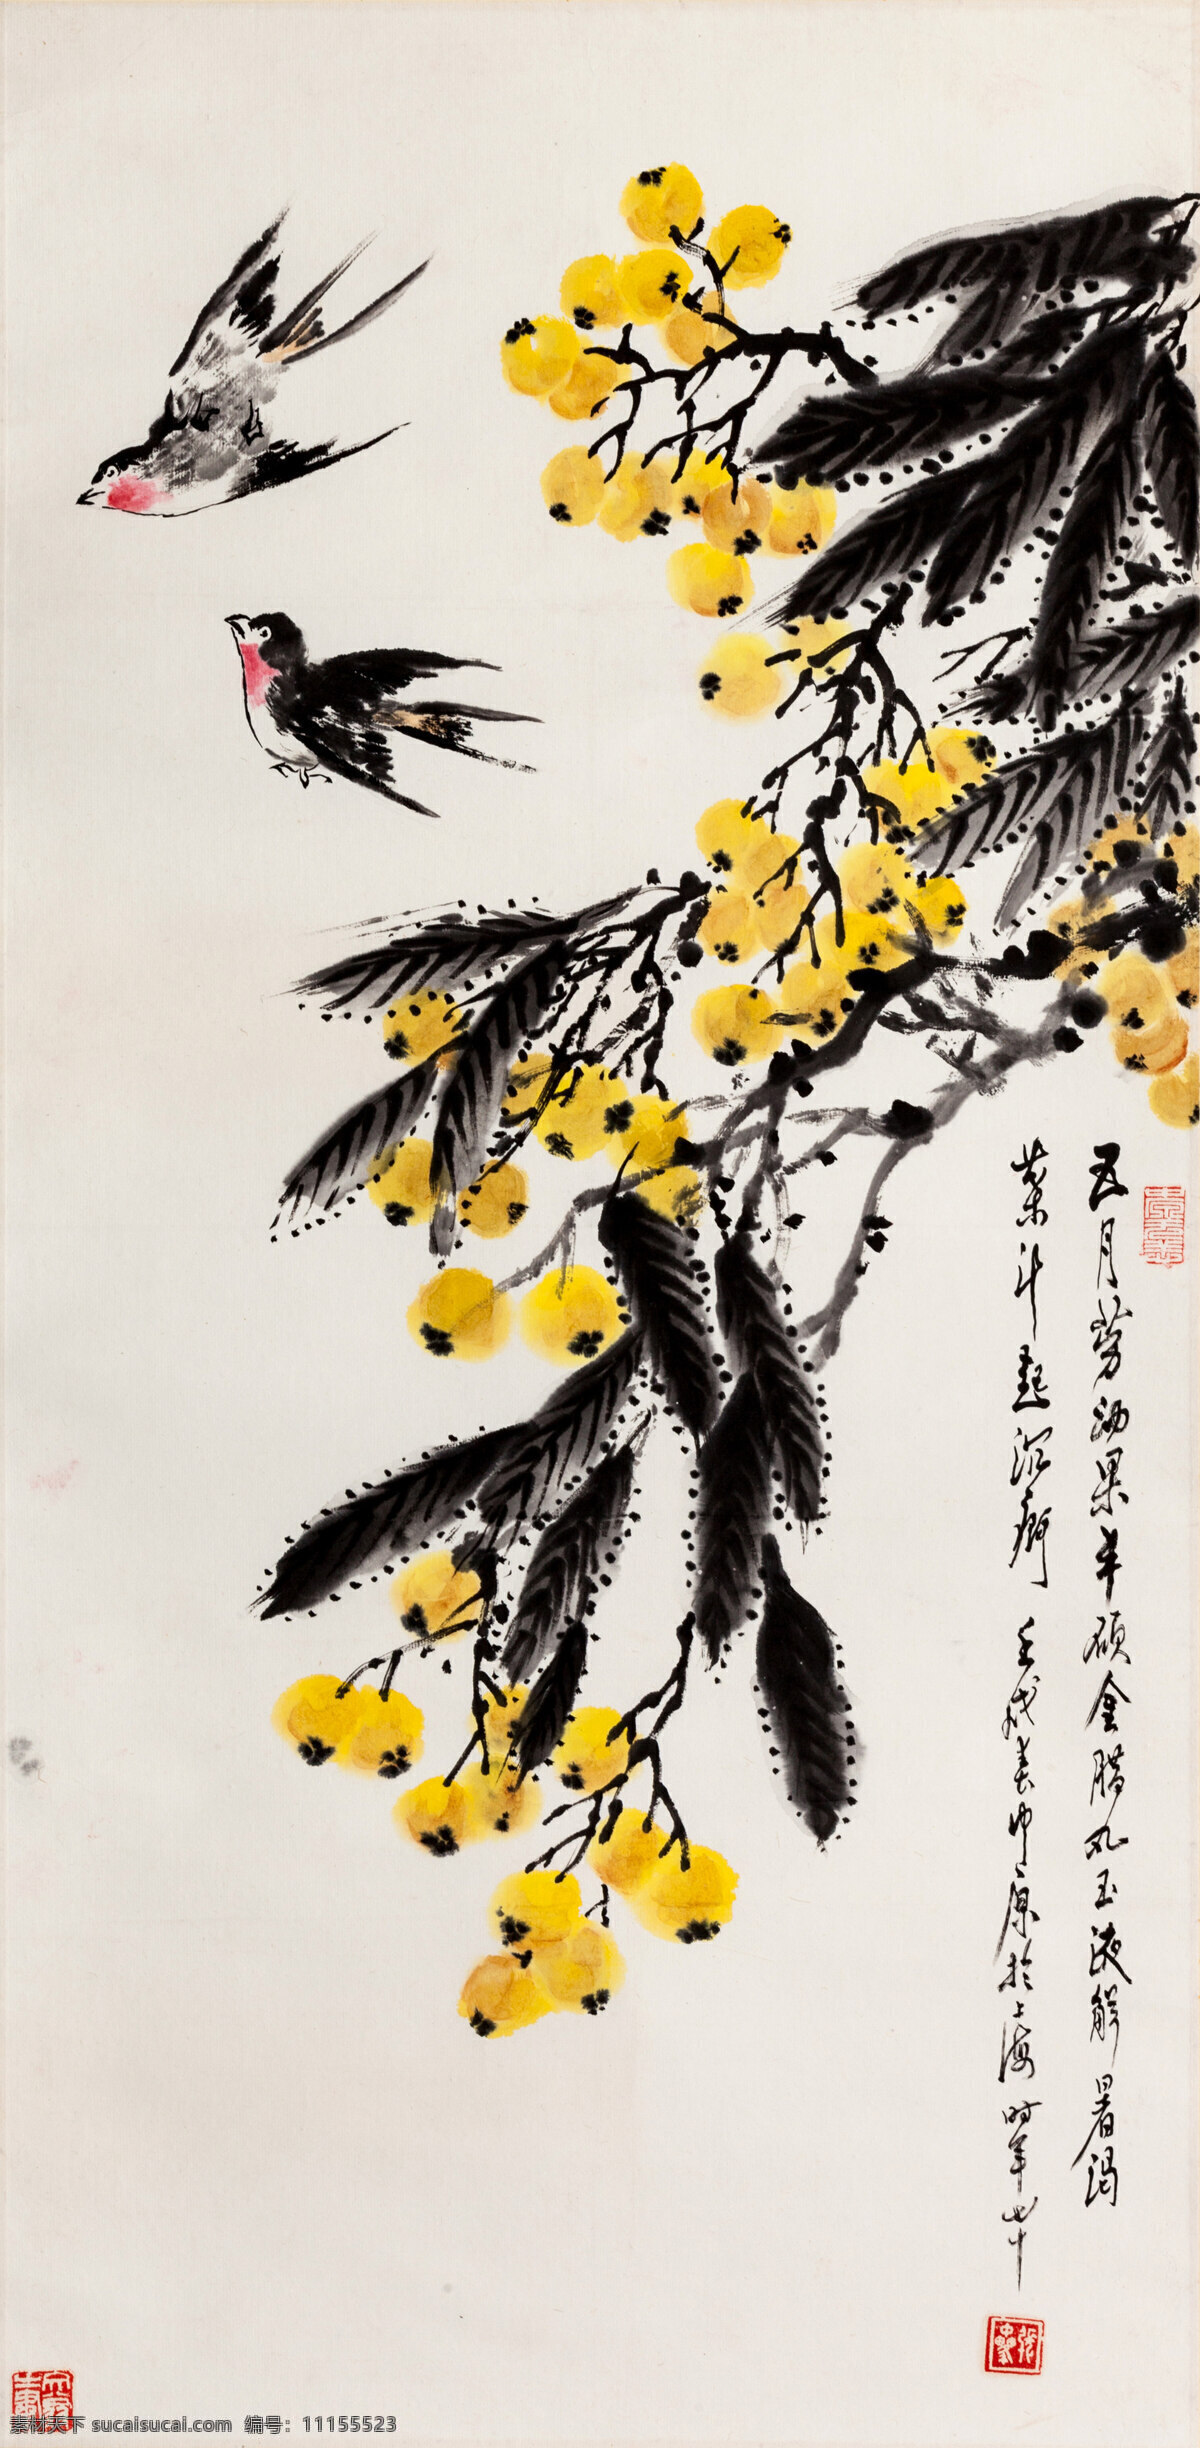 燕子中国画 中国画 中国 传统 绘画 花卉 燕子 文化艺术 绘画书法 白色